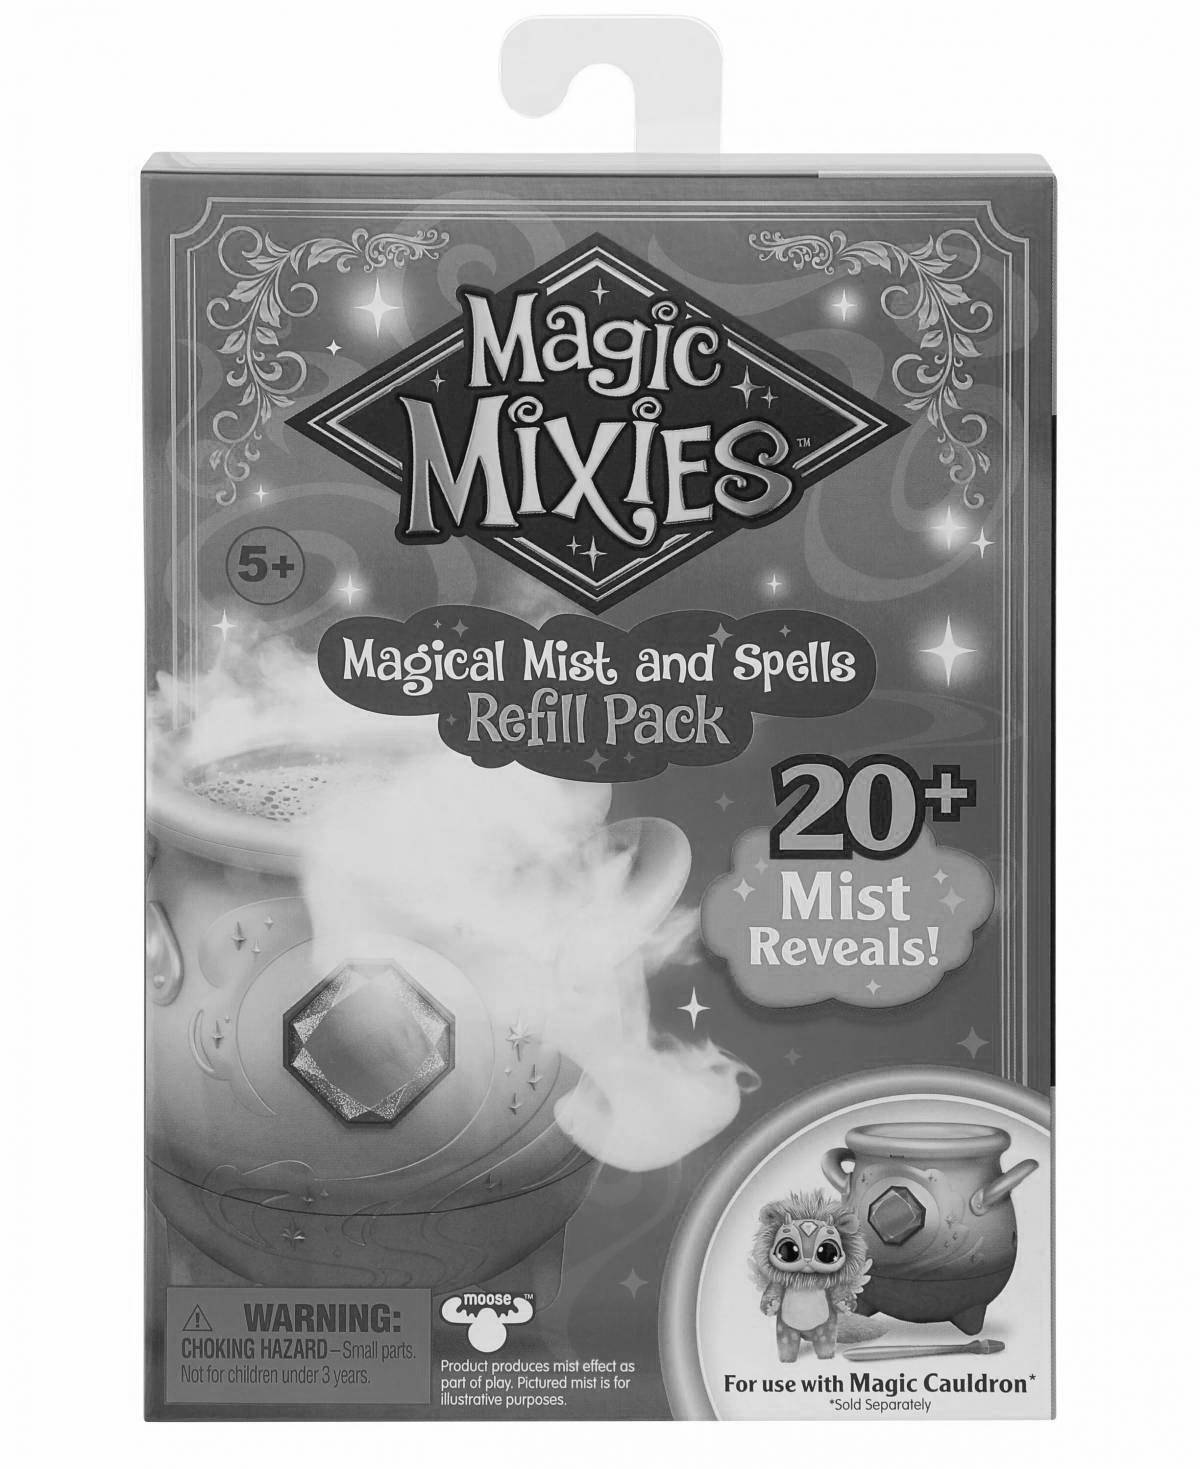 Great magic mixes coloring book